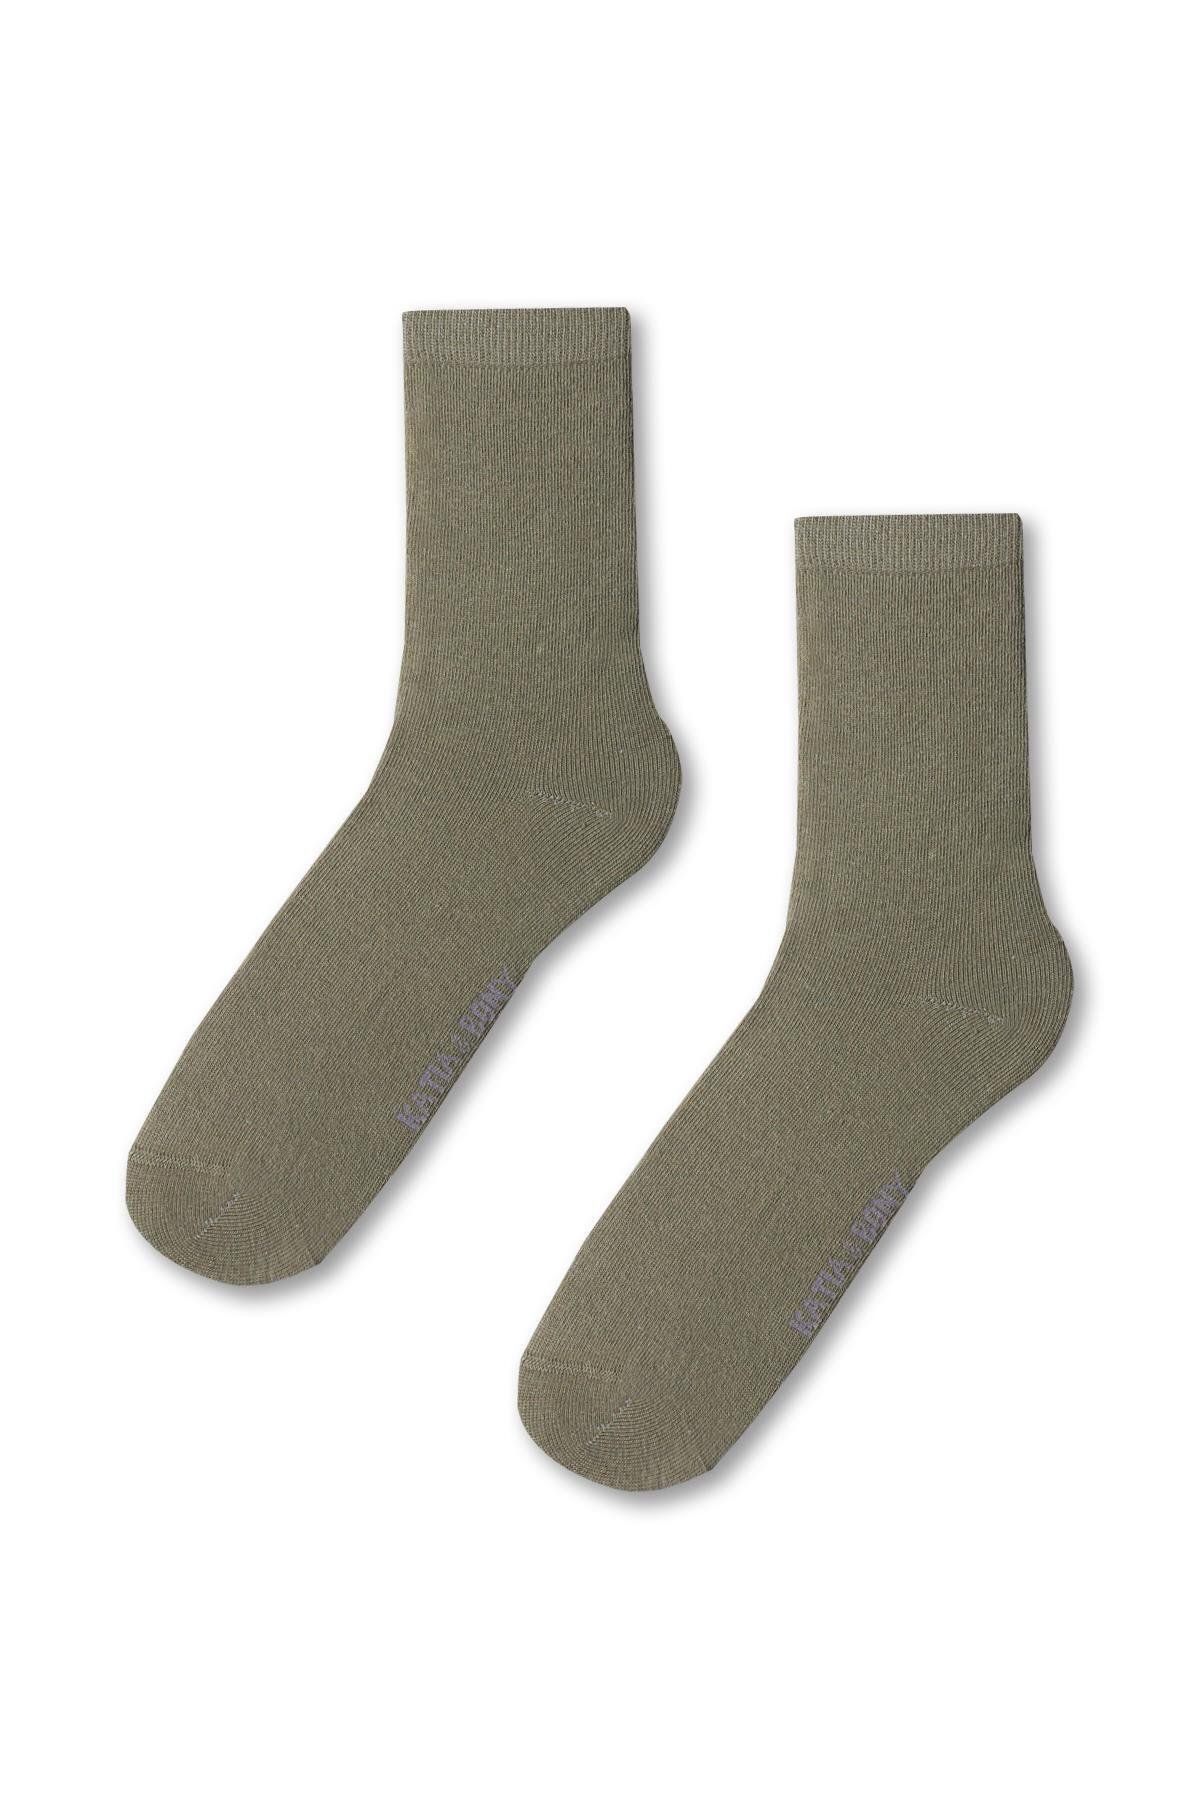 Katia & Bony Kadın Family Basic Soket Çorap Haki